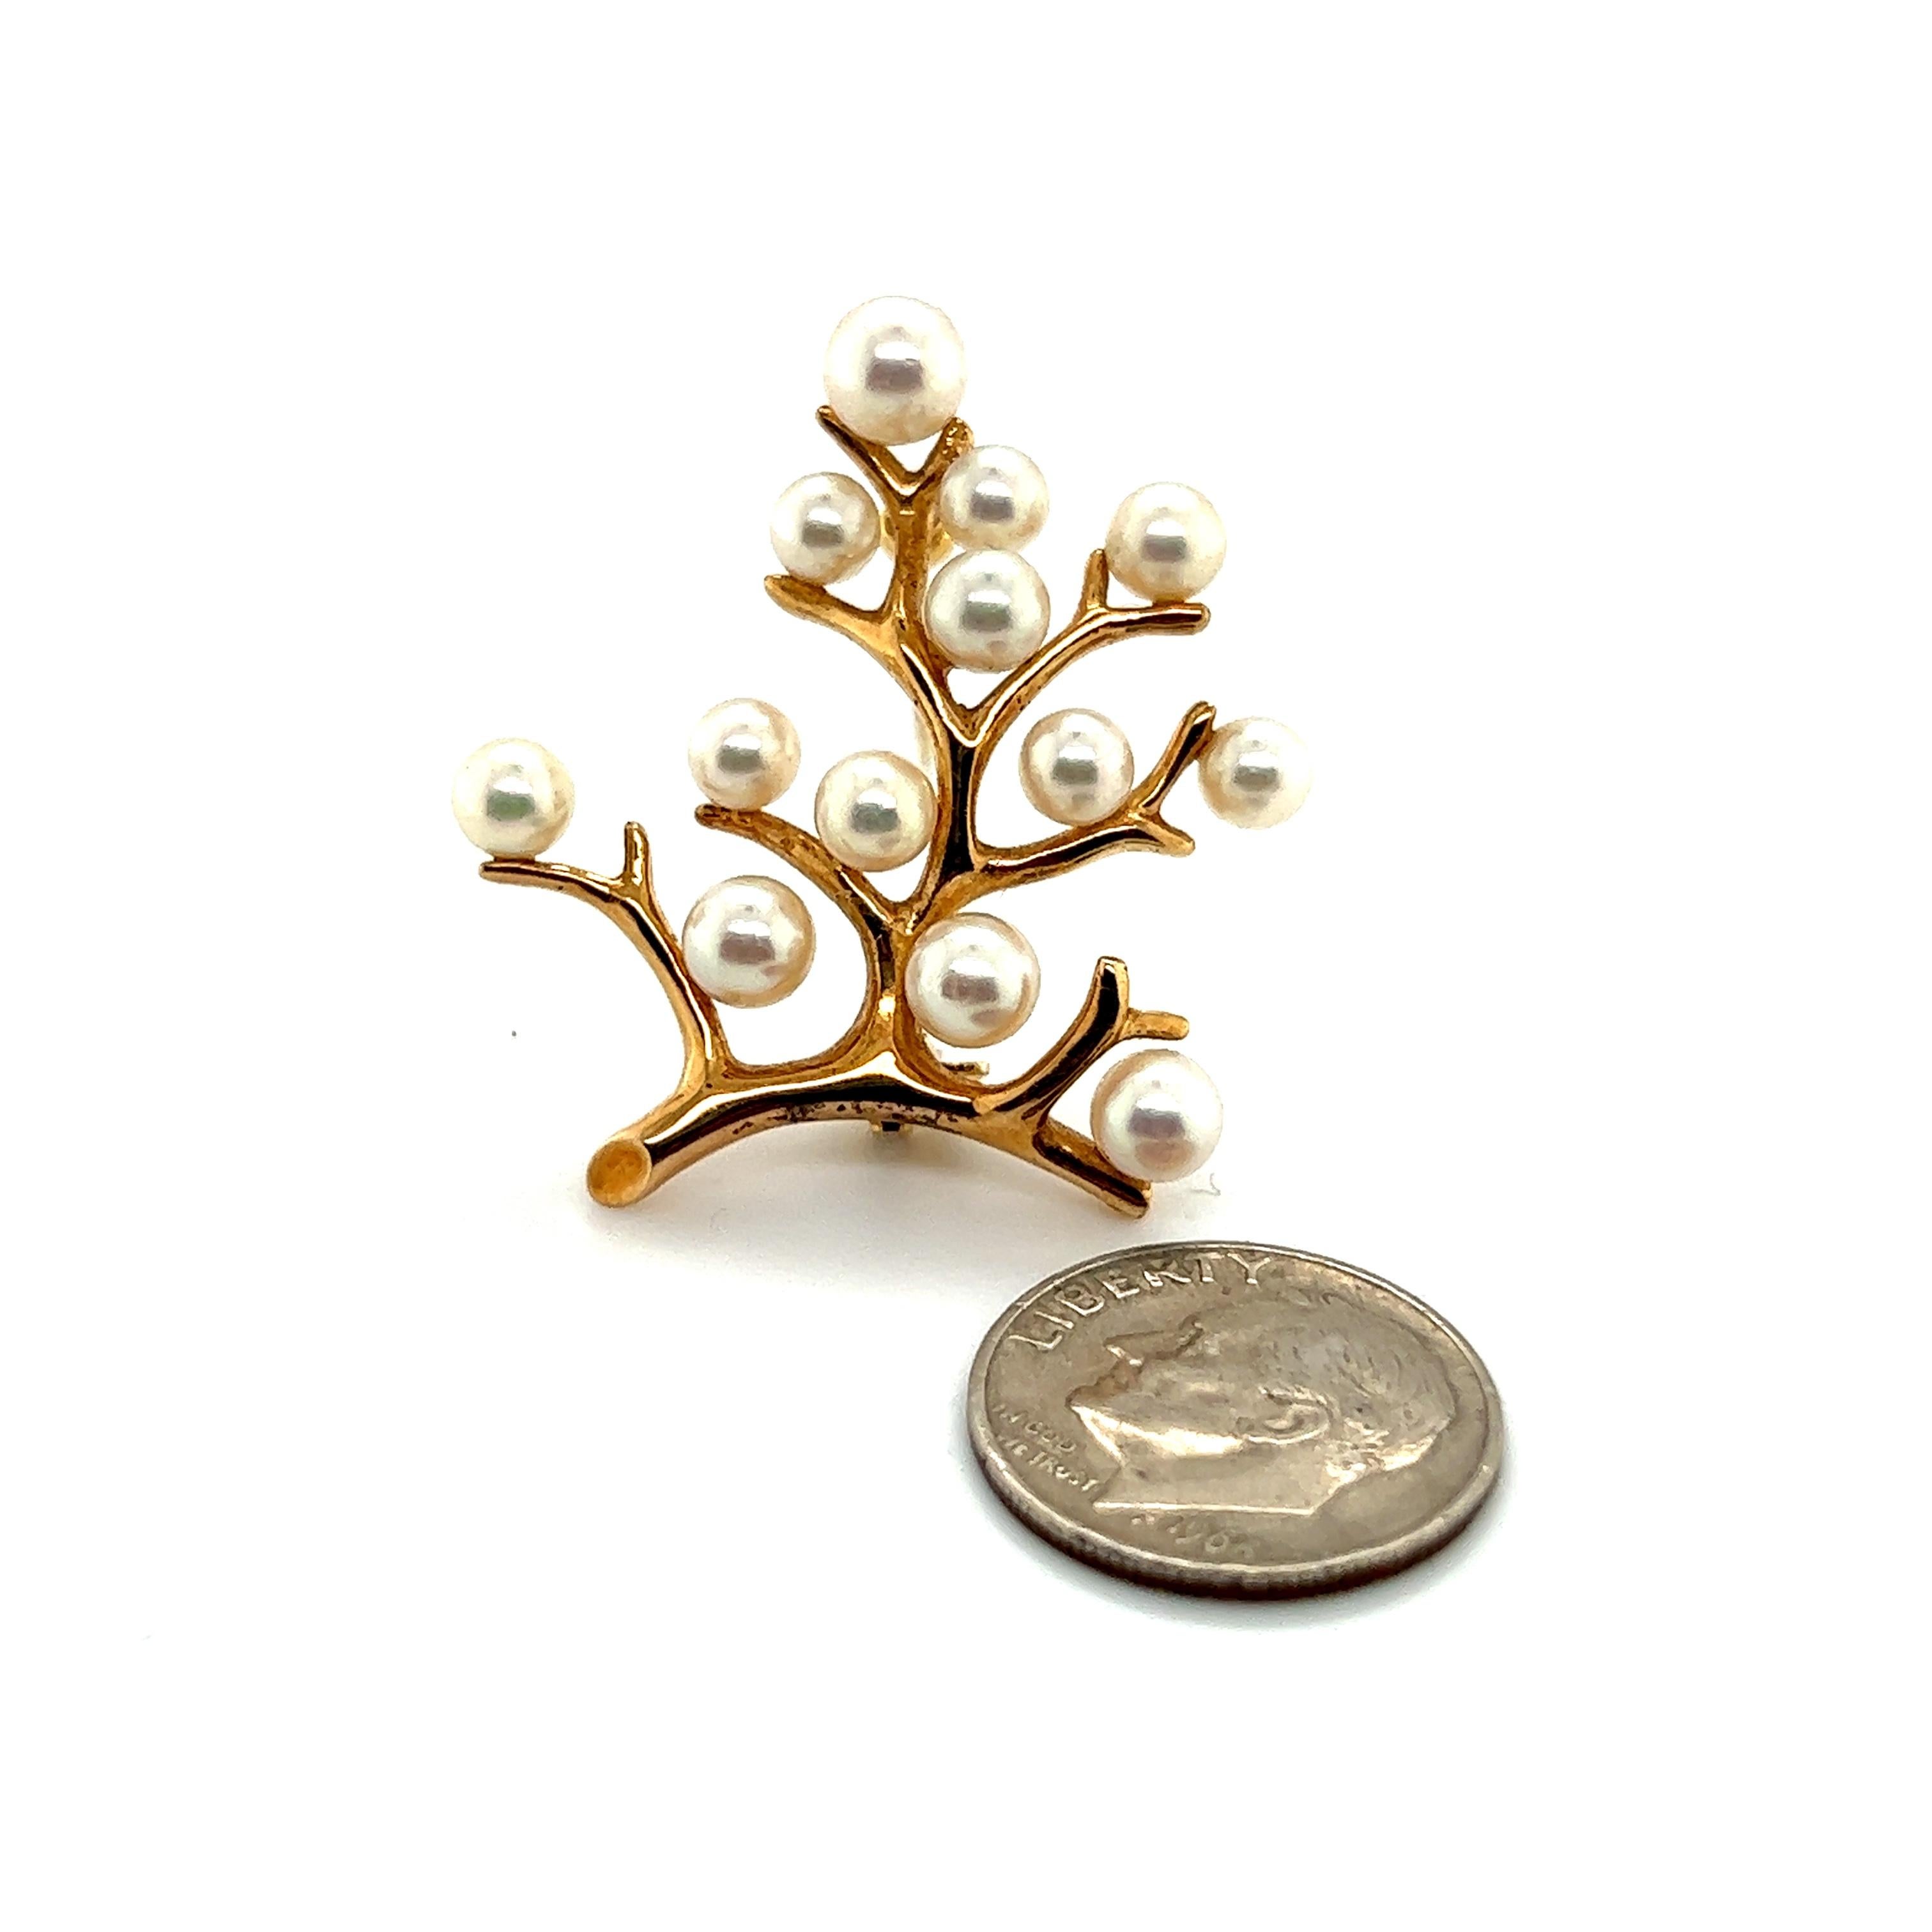 Mikimoto Estate Akoya Perle Baum des Lebens Brosche 14k Gold M317

Diese elegante, authentische Mikimoto-Brosche aus 14-karätigem Gold besteht aus 13 Salzwasser-Akoya-Zuchtperlen und hat ein Gewicht von 6 Gramm.

VERTRAUENSWÜRDIGER VERKÄUFER SEIT